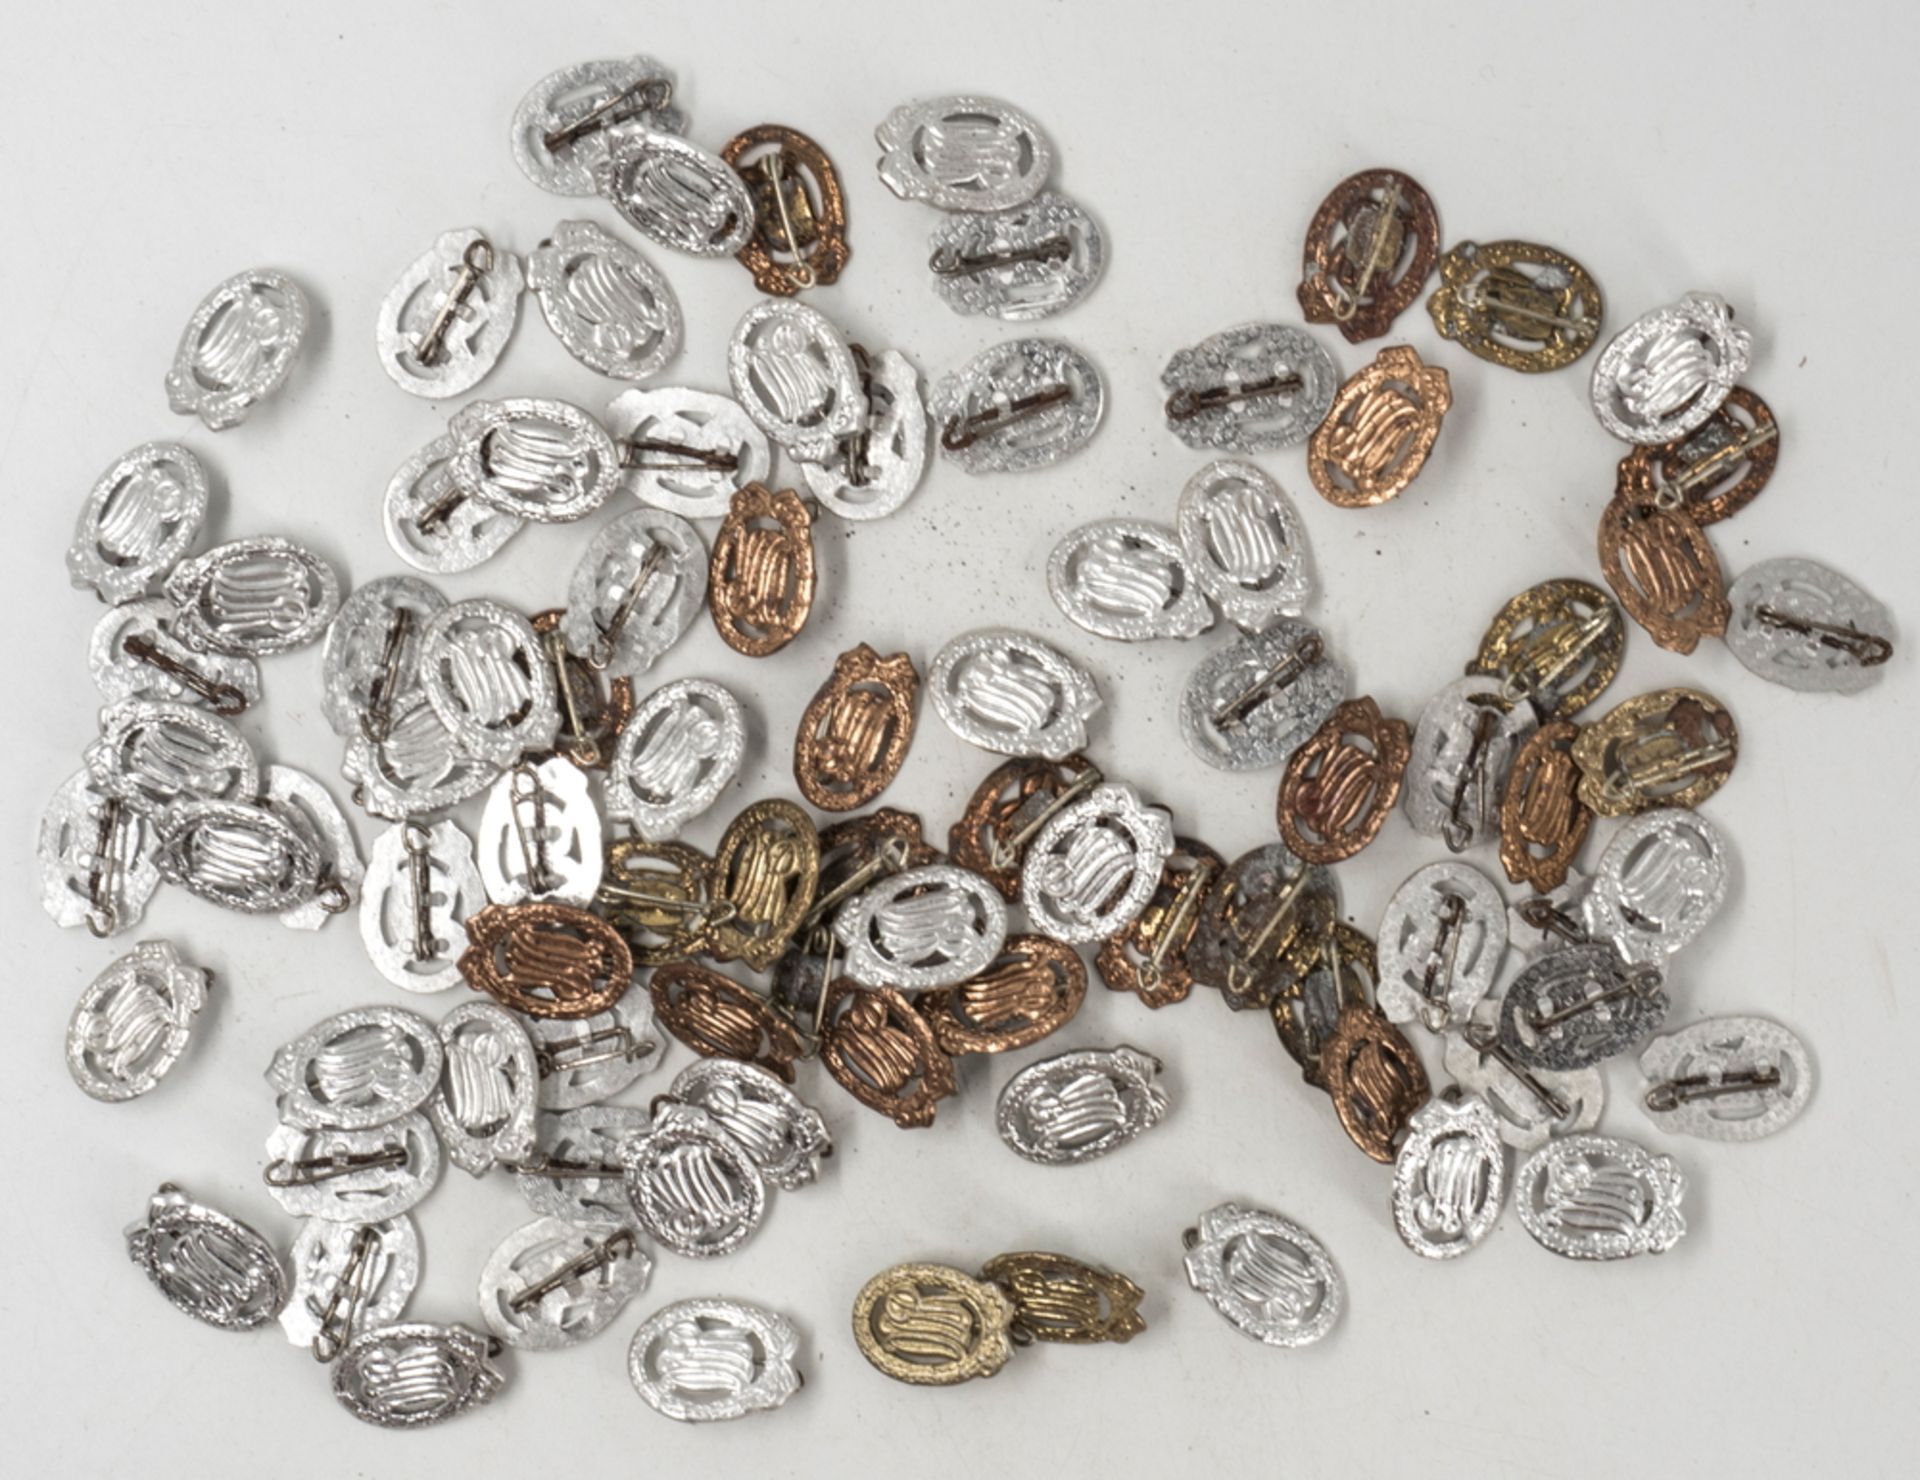 NVA, Lot Sportabzeichen, Gold, Silber, Bronze. Ca. 22 mm x ca. 15 mm. Insgesamt 86 Stück.